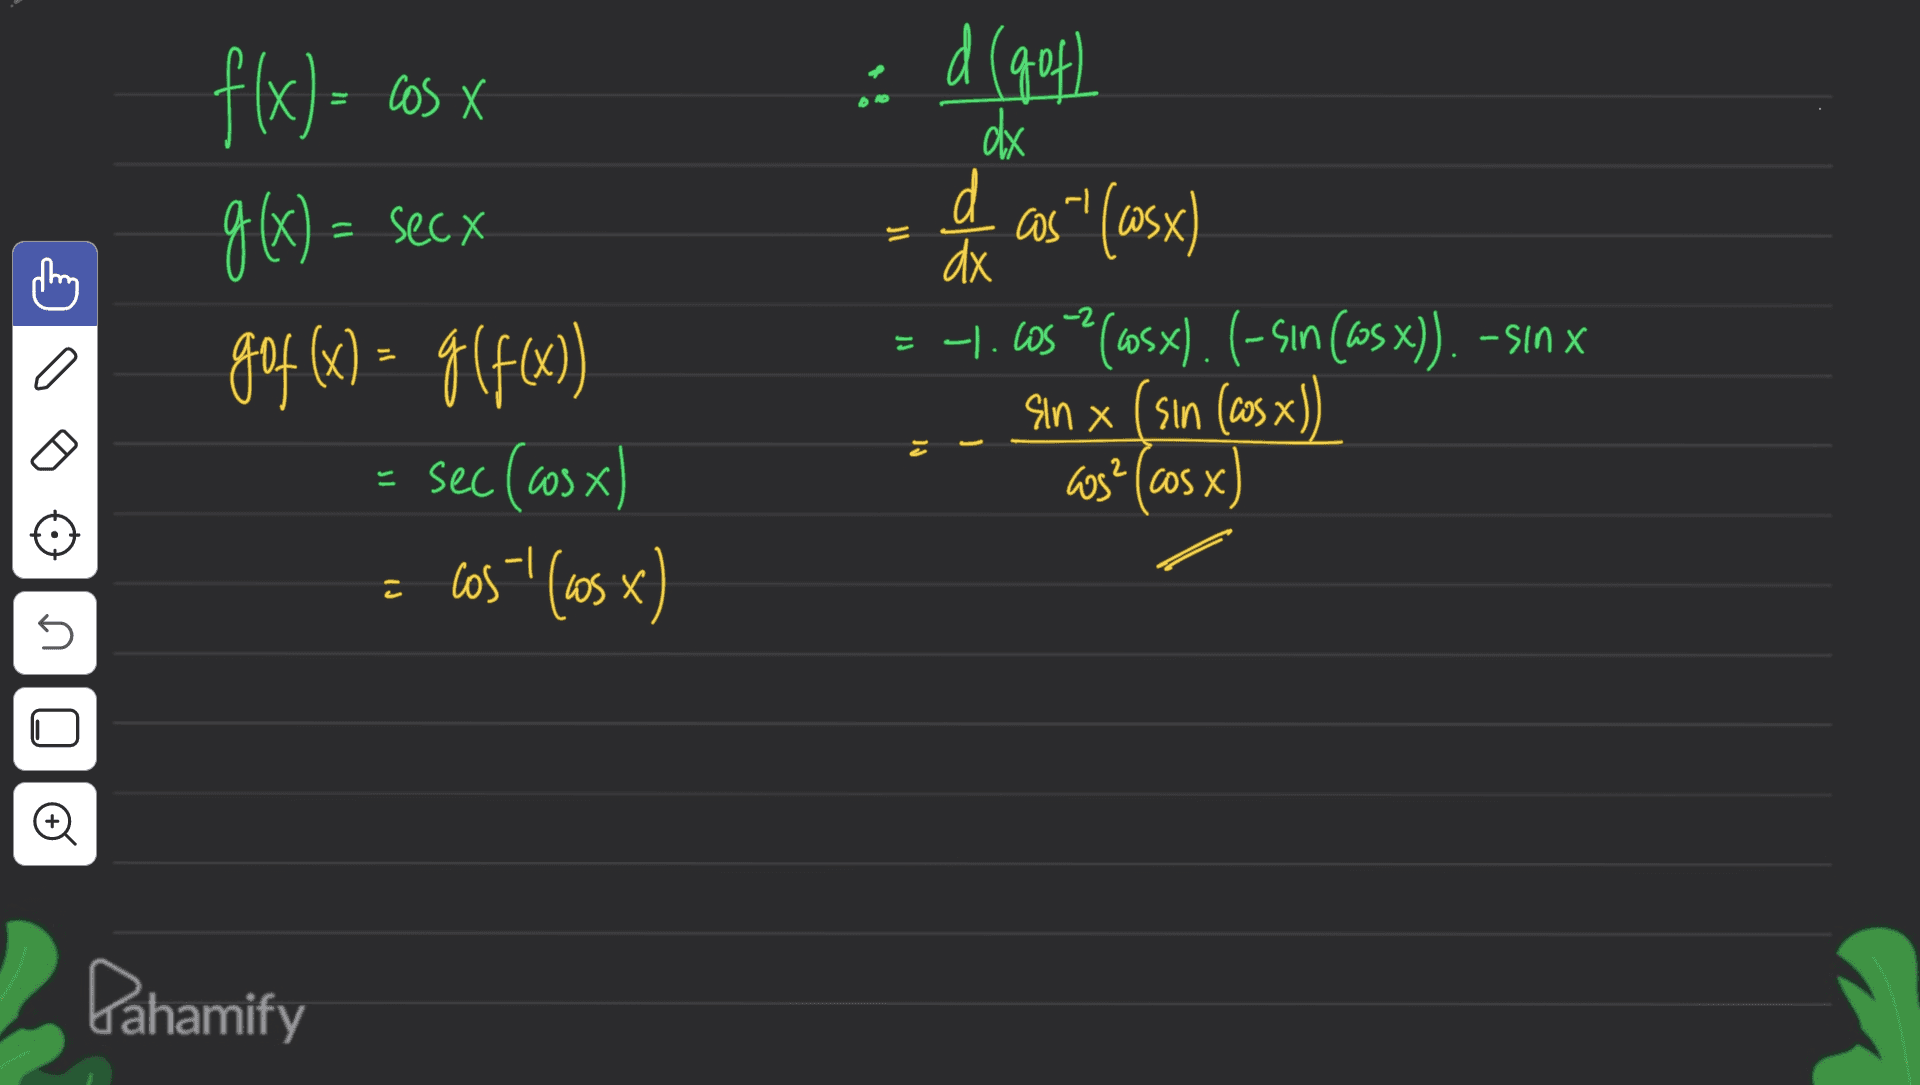 = = f(x) = cos x g(x) = secx gof(x) = g(f(x)) 9 = sec (cosx) cos'' (65) d (gof) d dx d as"! (wsx) dx -1.605? (605x). (-sin (wsx)). -sin x Sin x (sın (cos x)) 3?(cos x) -2 = 2 c J U 5 o Pahamify 